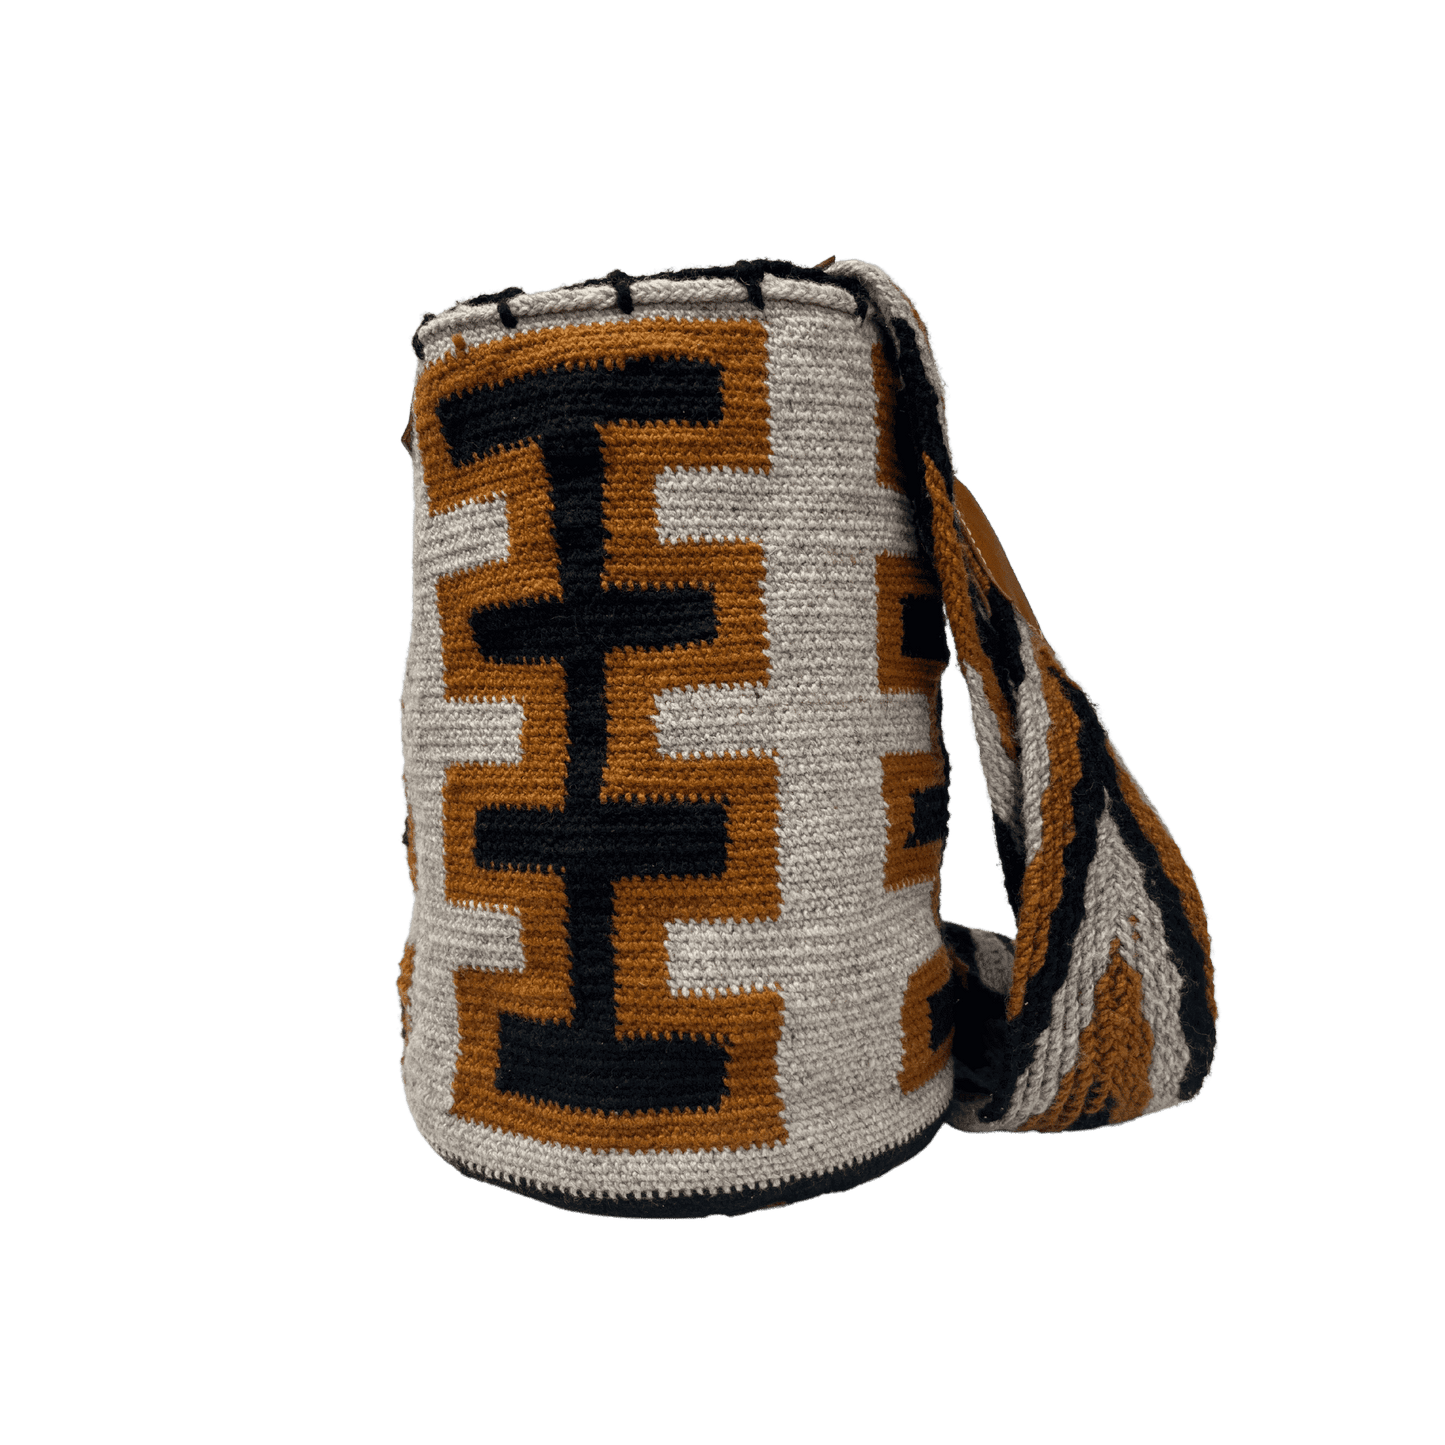 Mochila arhuaca tejida de forma artesanal para mujer con detalles en cuero